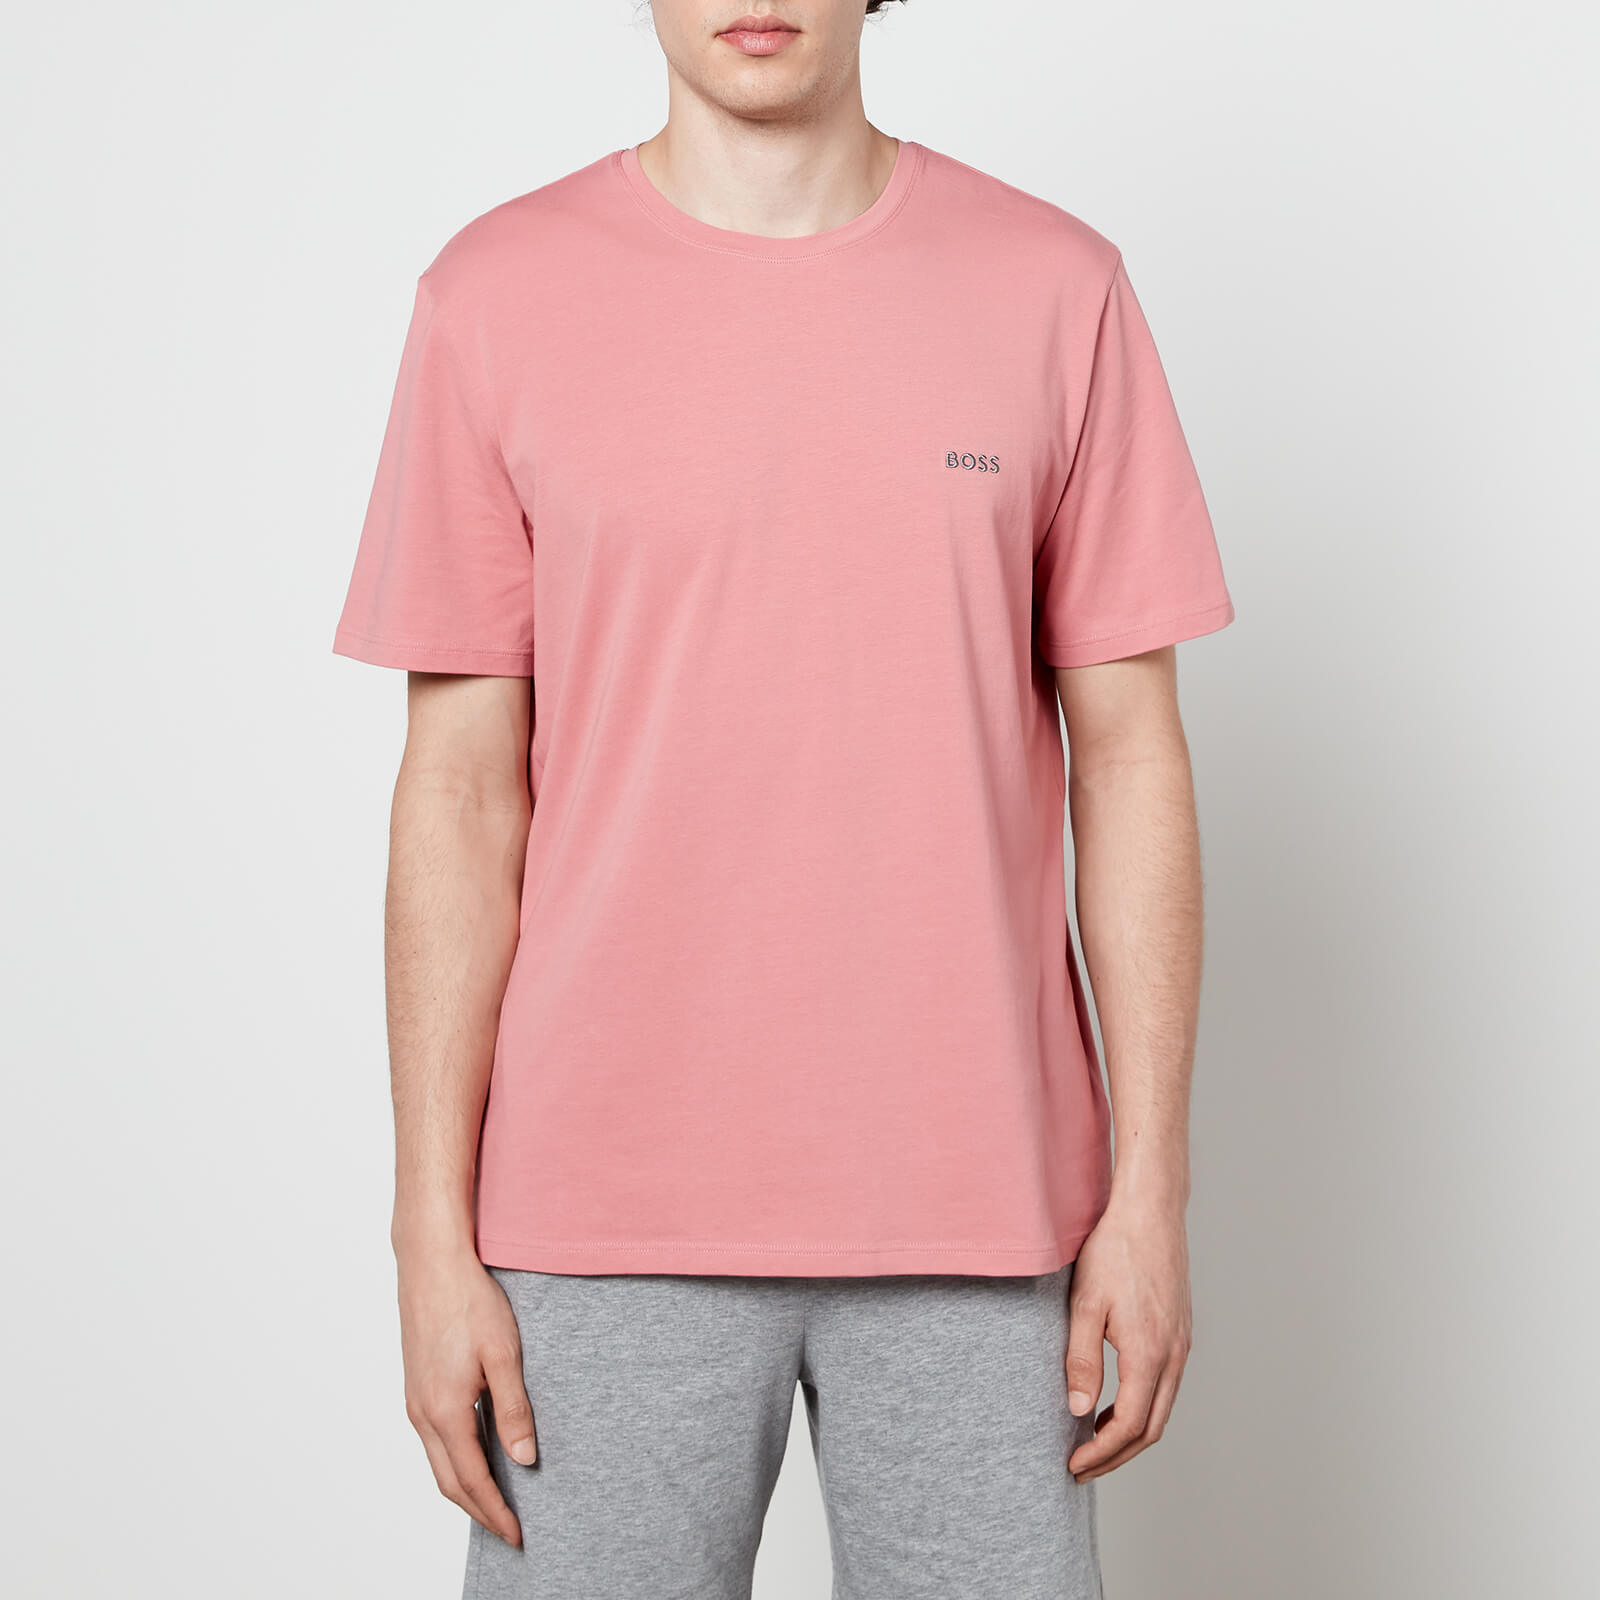 BOSS Bodywear Men's Mix&Match T-Shirt - Open Pink - S